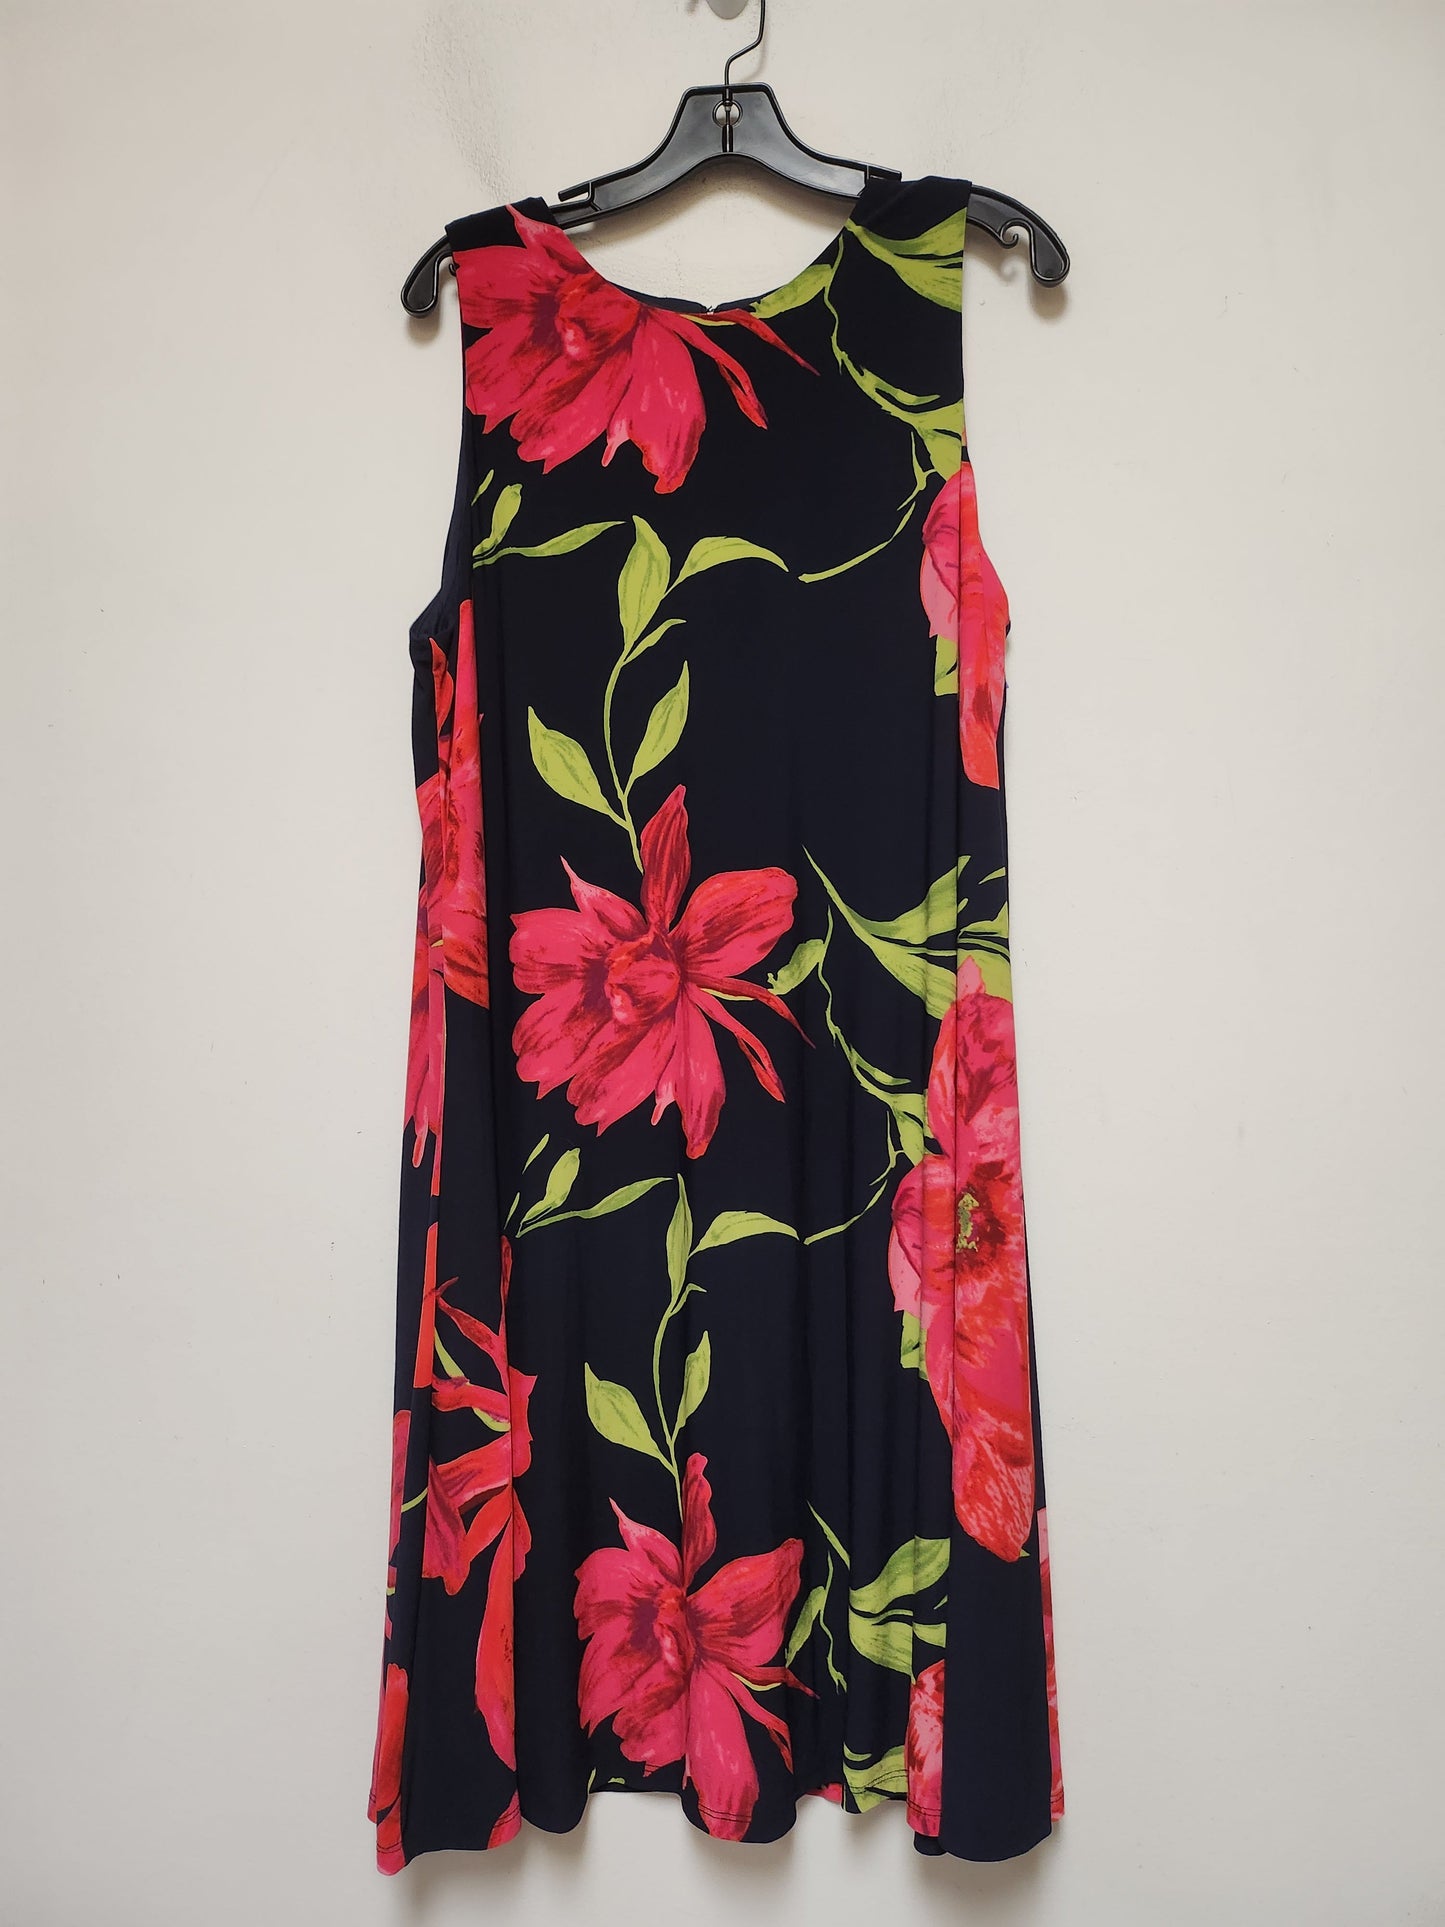 Floral Print Dress Casual Midi Anne Klein, Size Xl